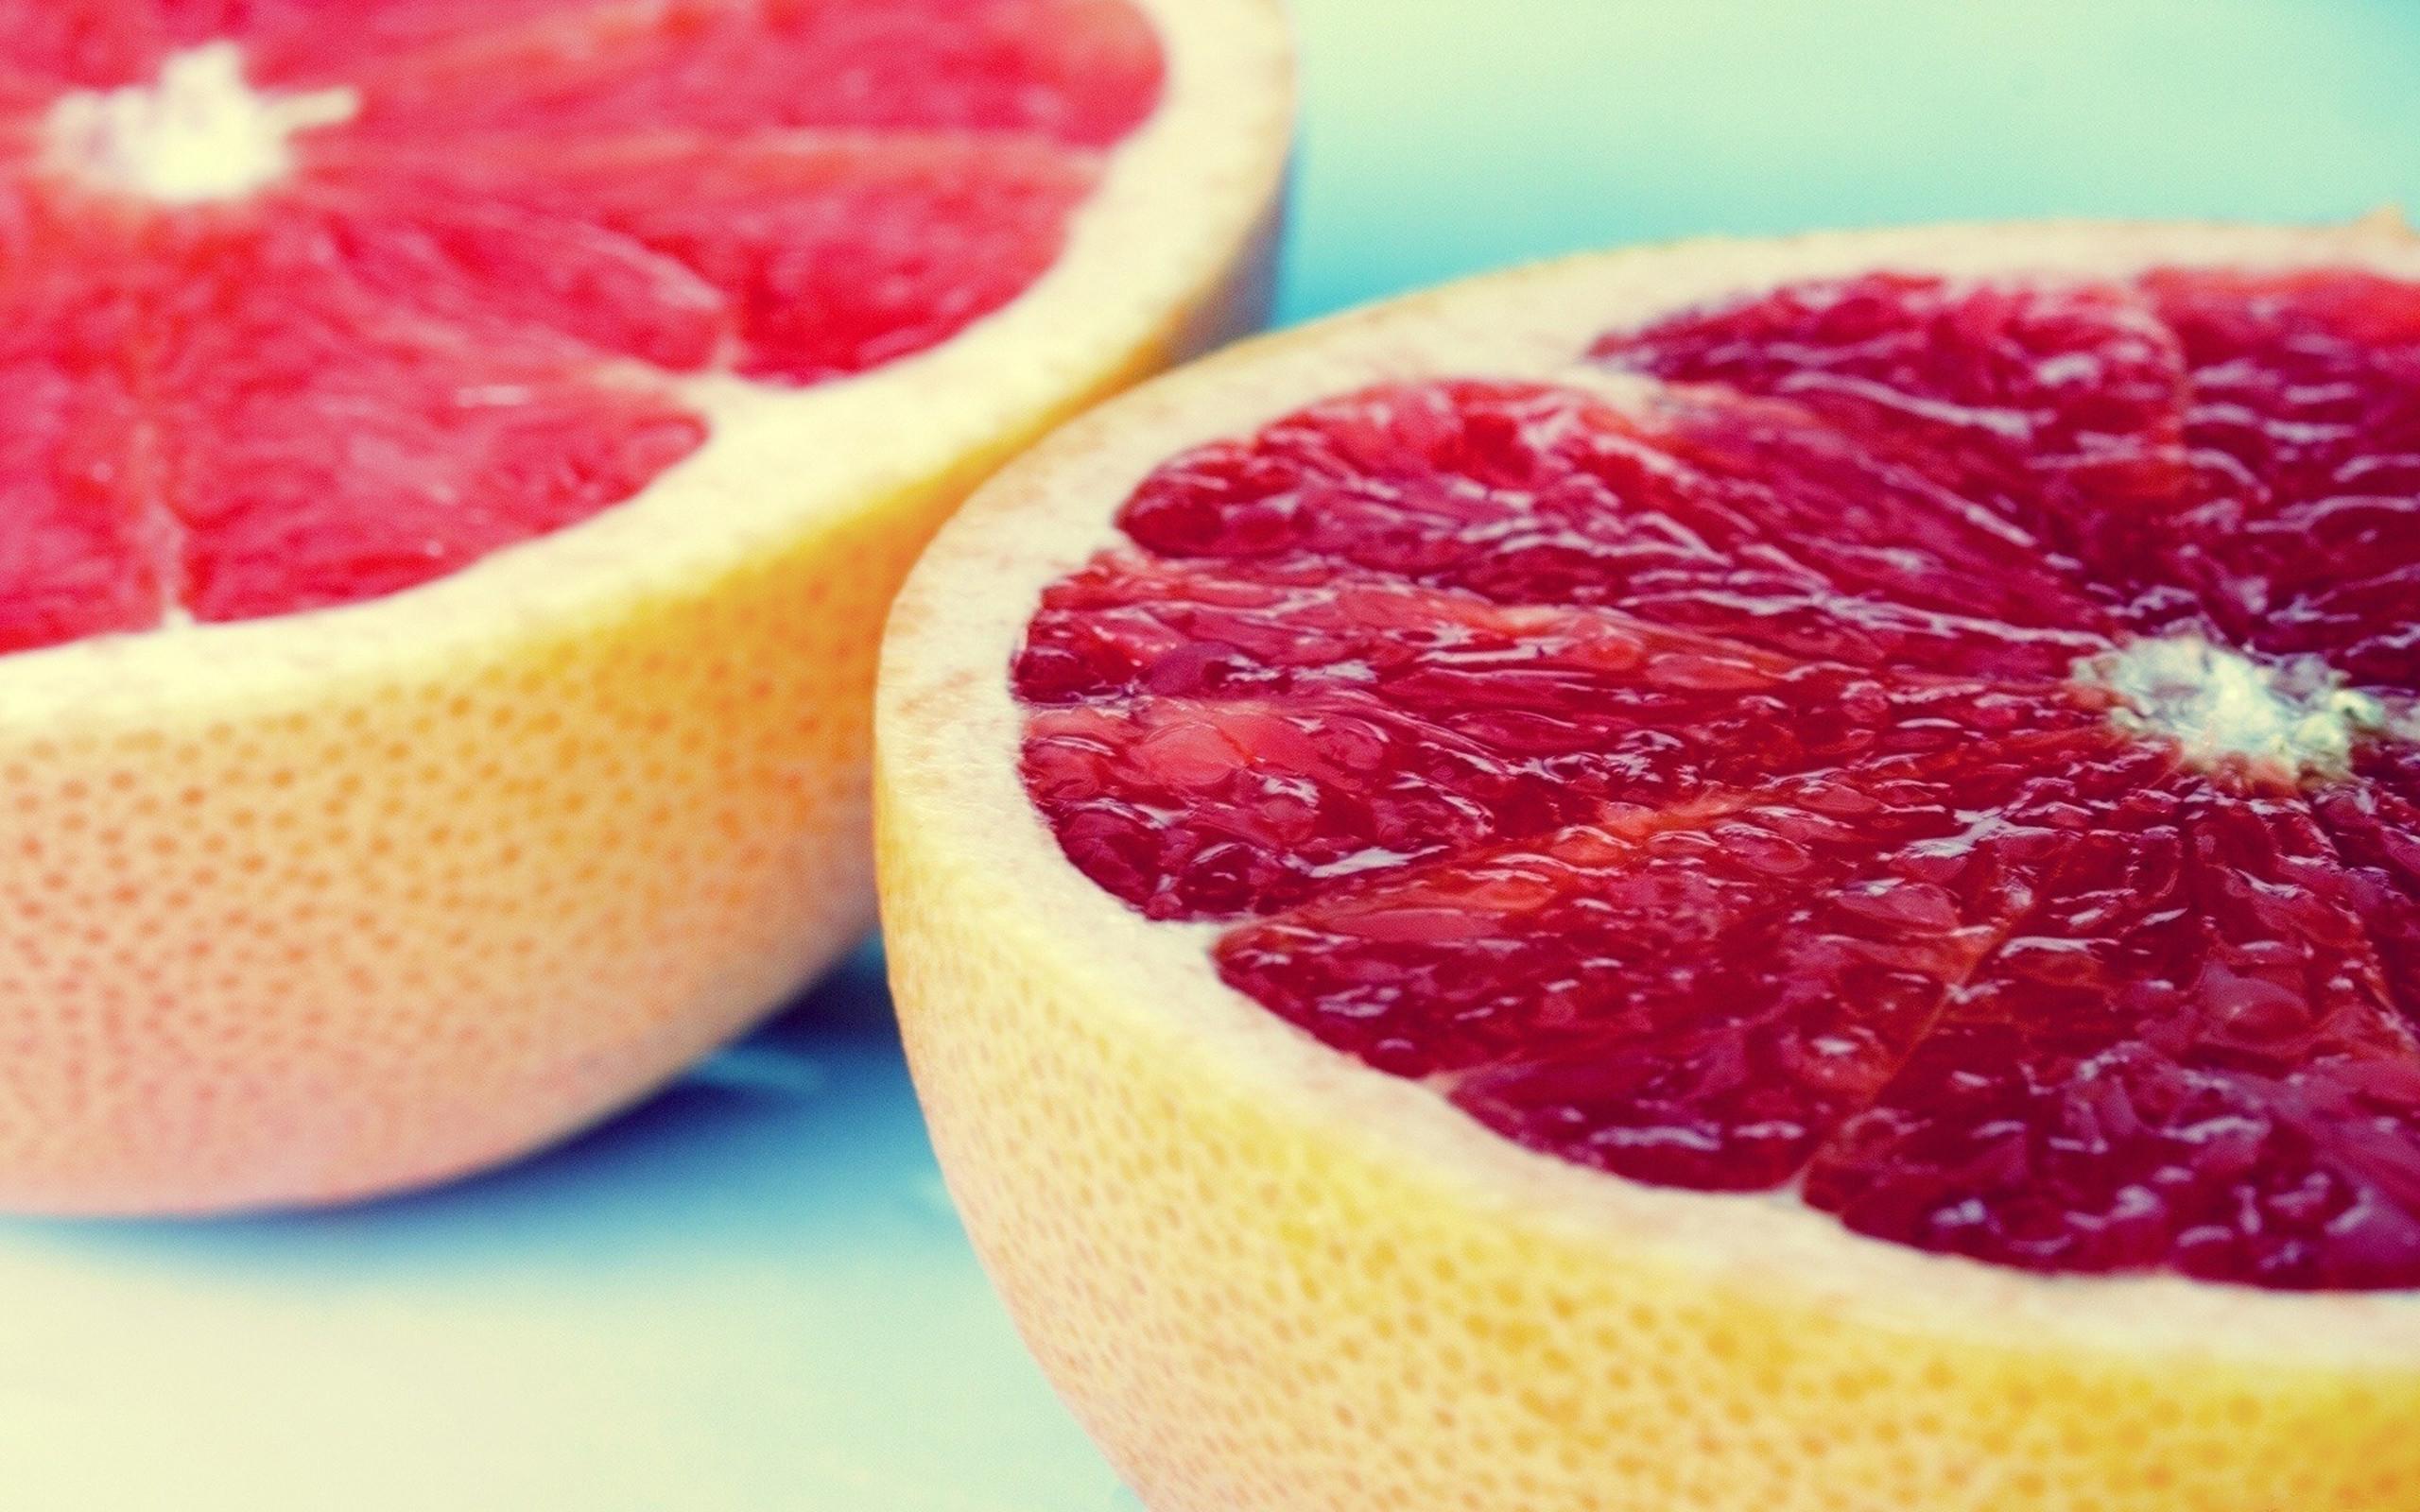 Grapefruit Background